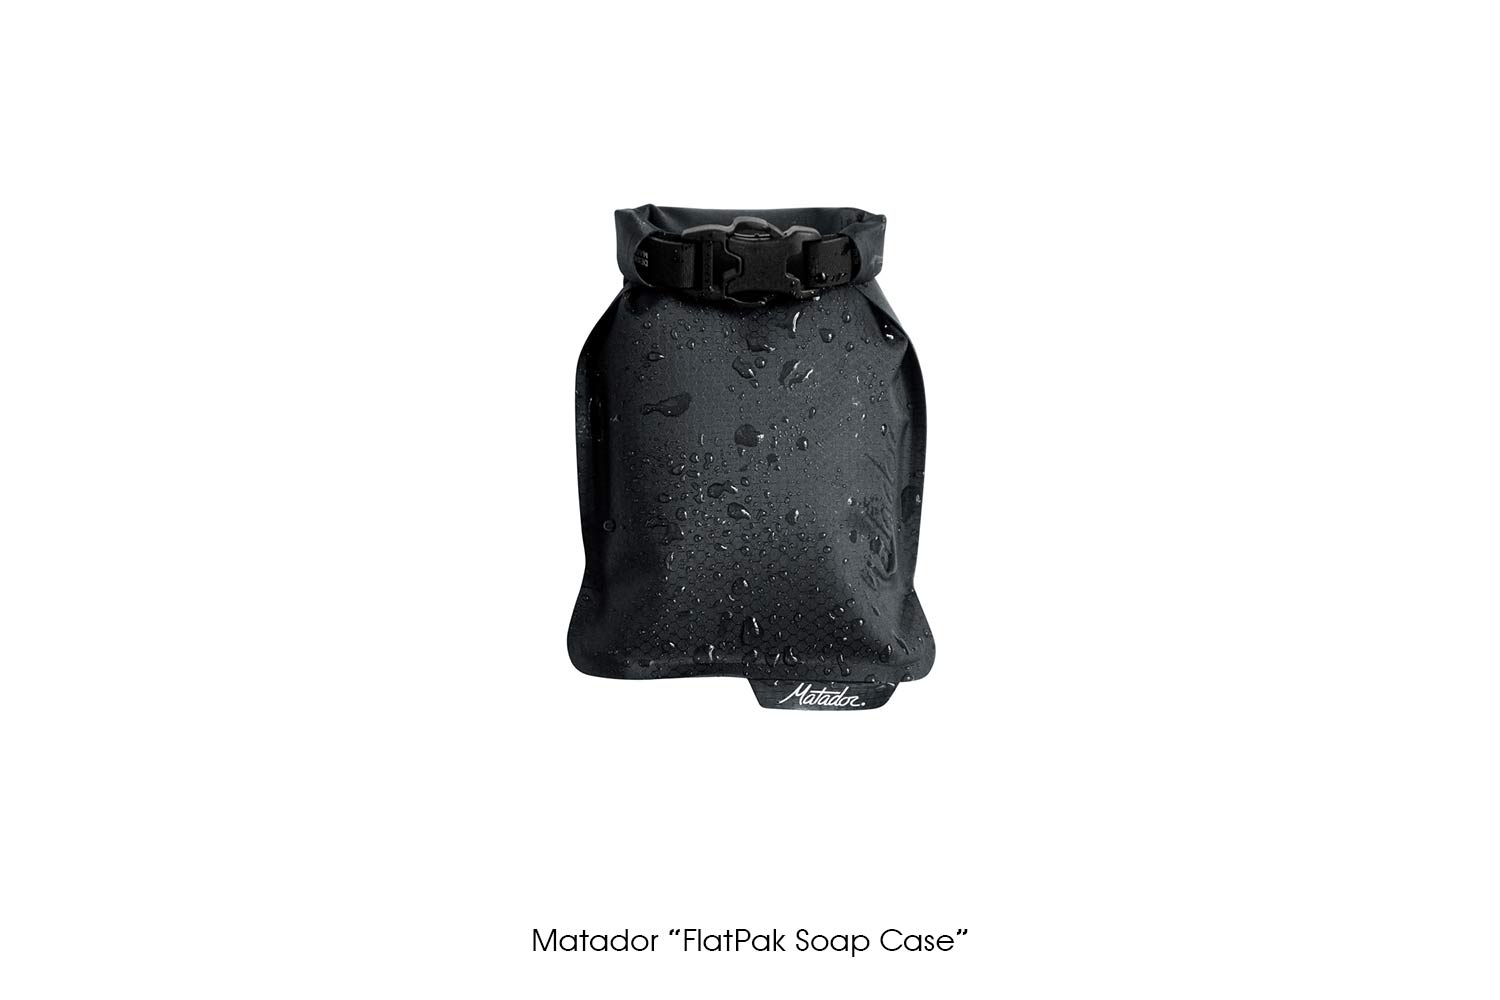 Matador "FlatPak Soap Case"